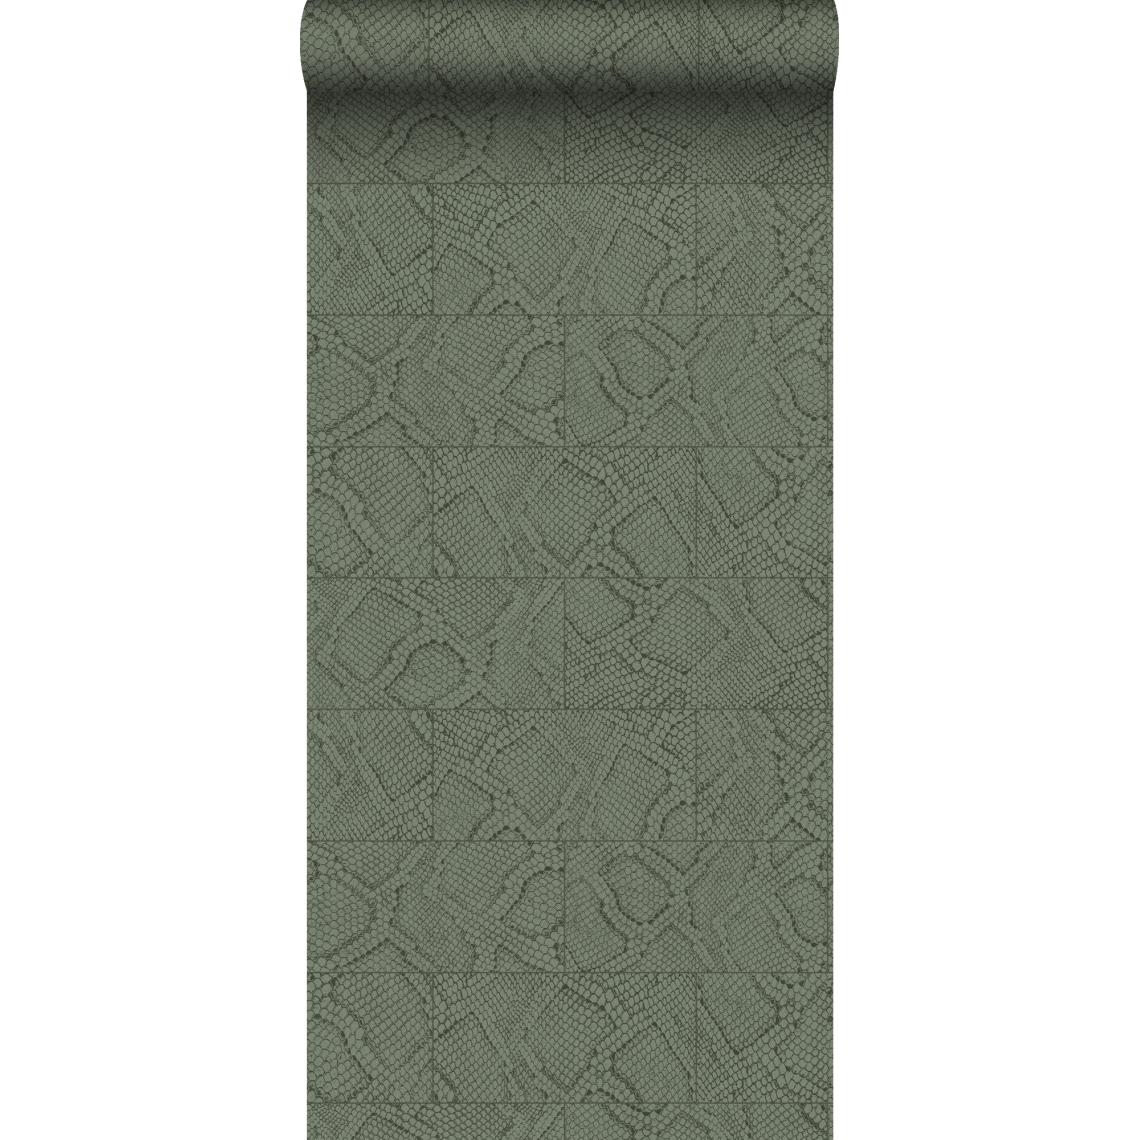 Origin - Origin papier peint motif de carrellages avec imitation peau de serpent vert olive grisé - 347787 - 0.53 x 10.05 m - Papier peint